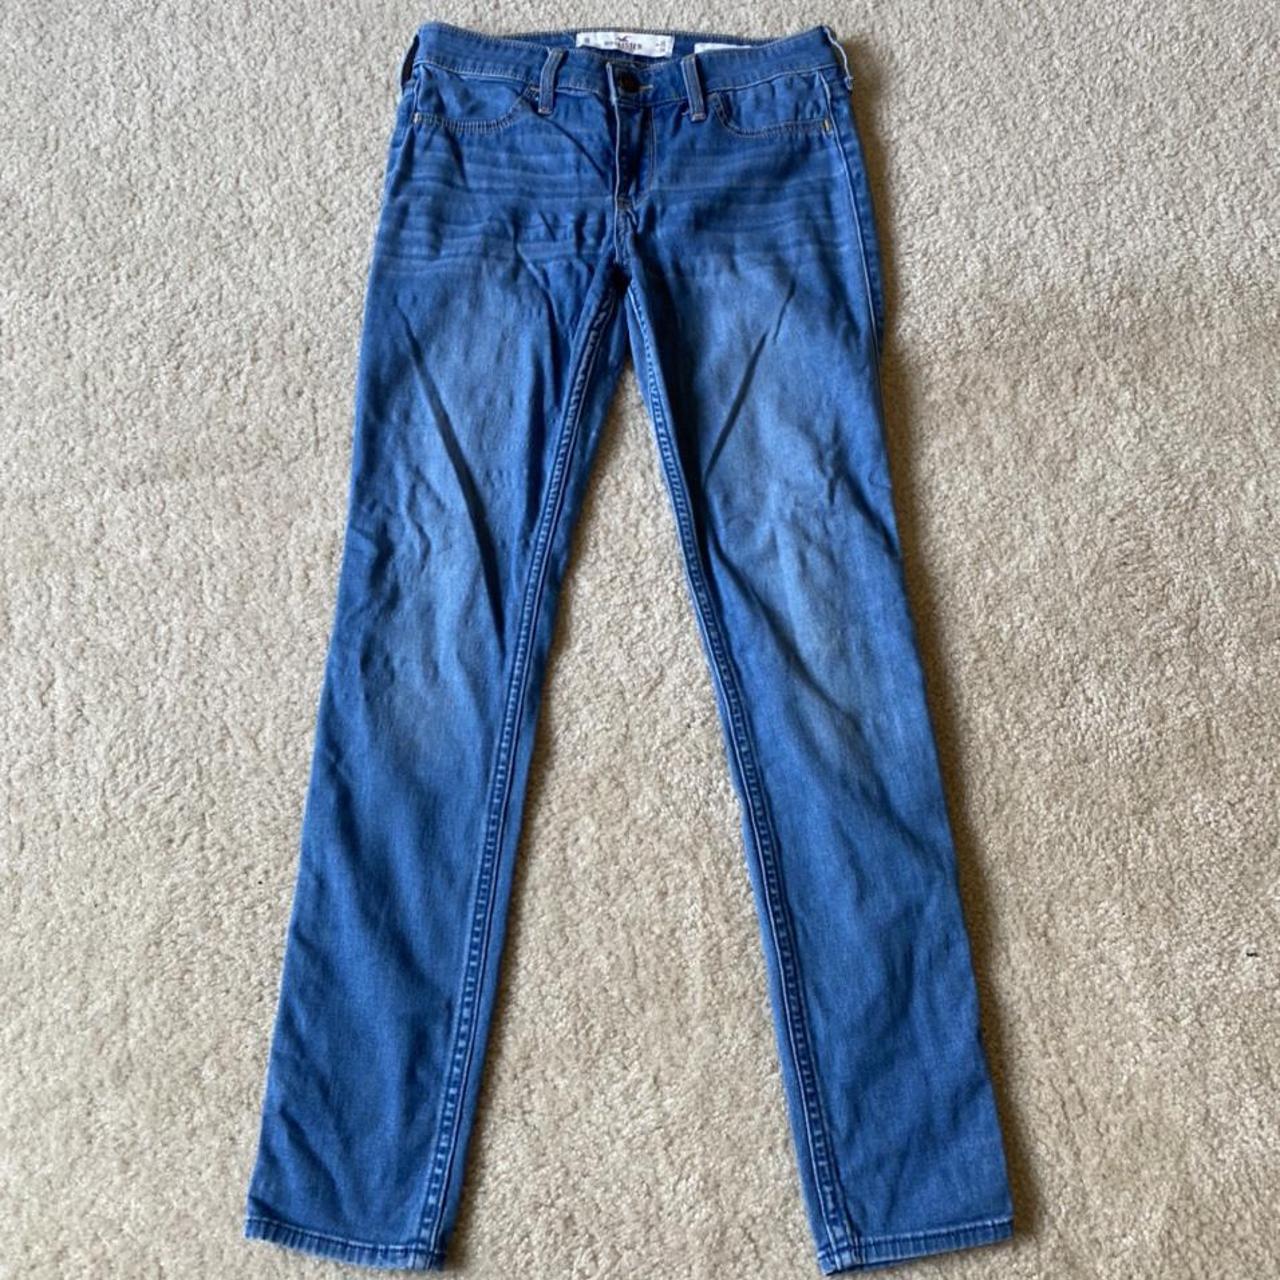 Hollister Jeans Low rise jean leggings Size: 3 - Depop